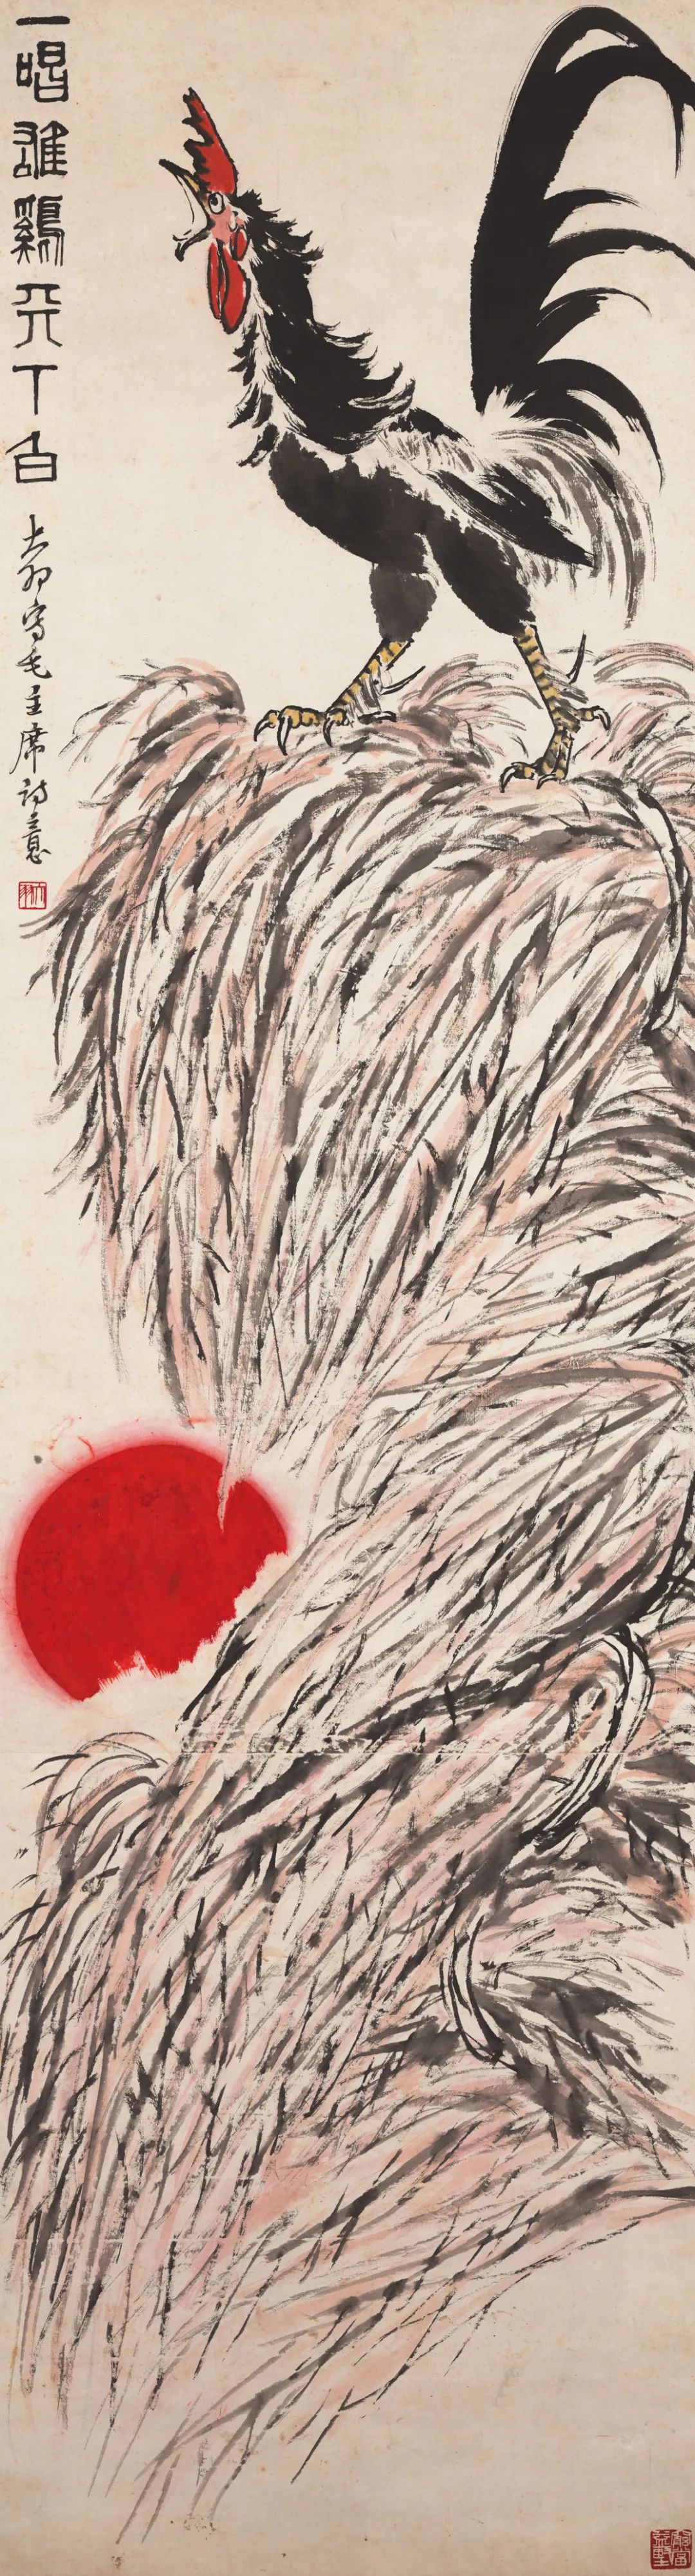 一唱雄鸡天下白 陈大羽 中国画 218×57cm 1962年 南京艺术学院美术馆藏